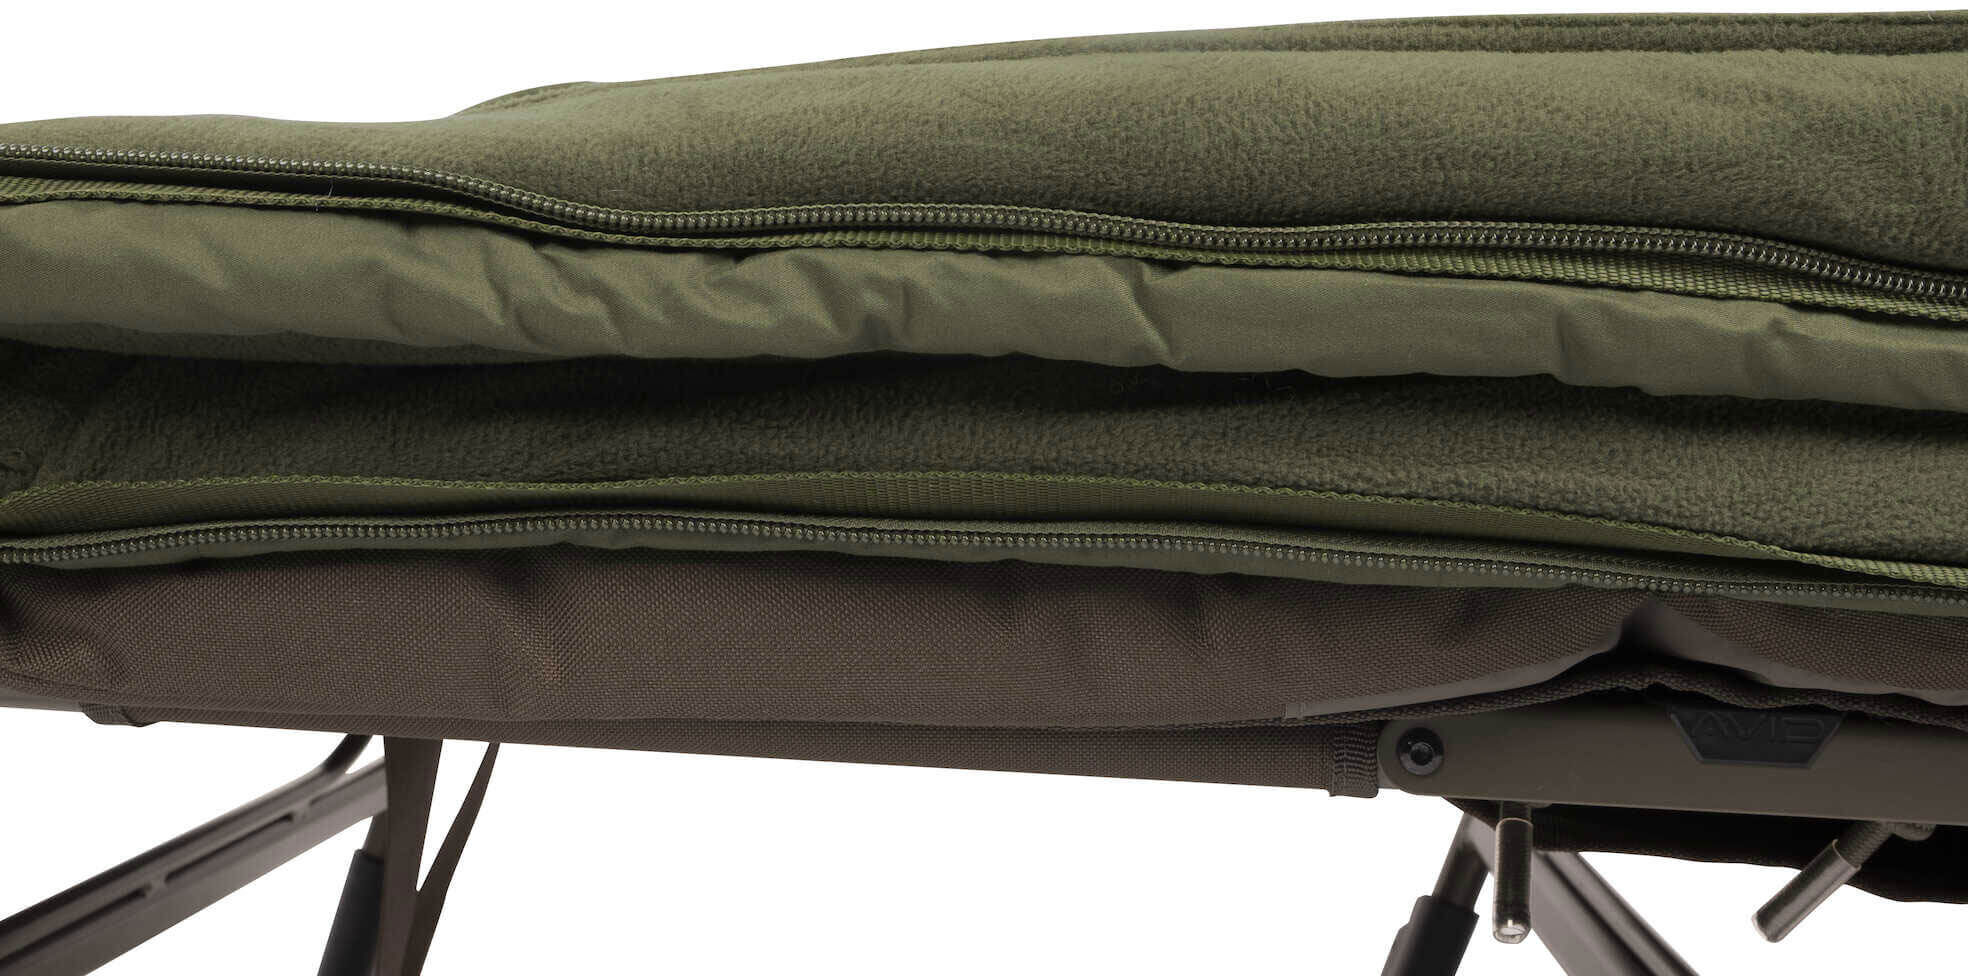 Der Avid Schlafsack besitzt 2 Schlafsäcke in Einem.